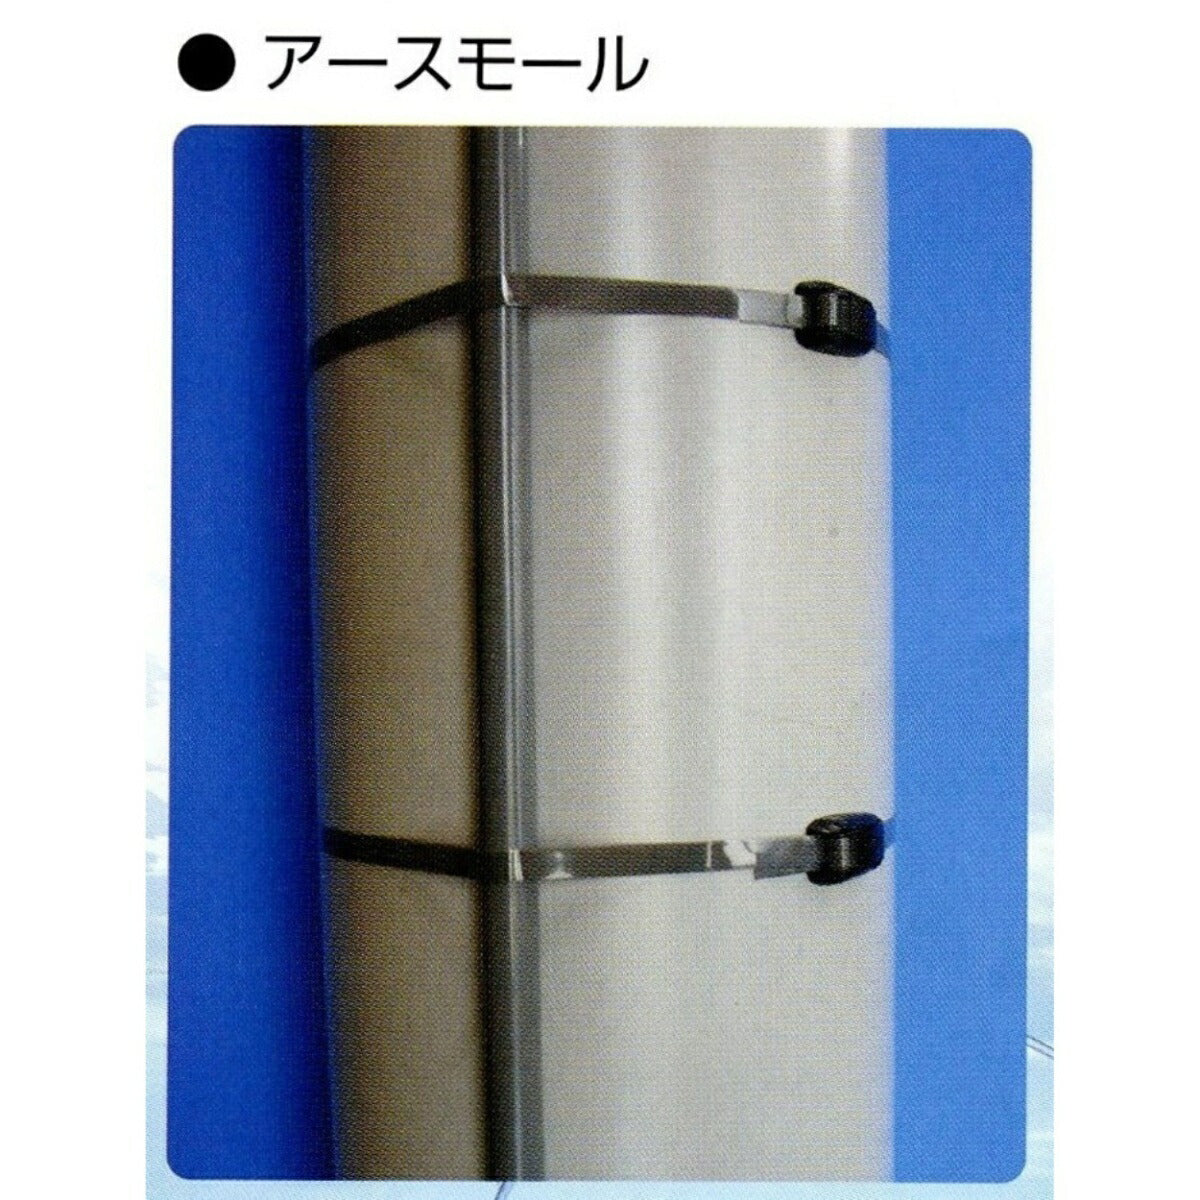 【スピード発送】プラスチックベルト 標識版 電柱 PLB-109 日本製 yh233